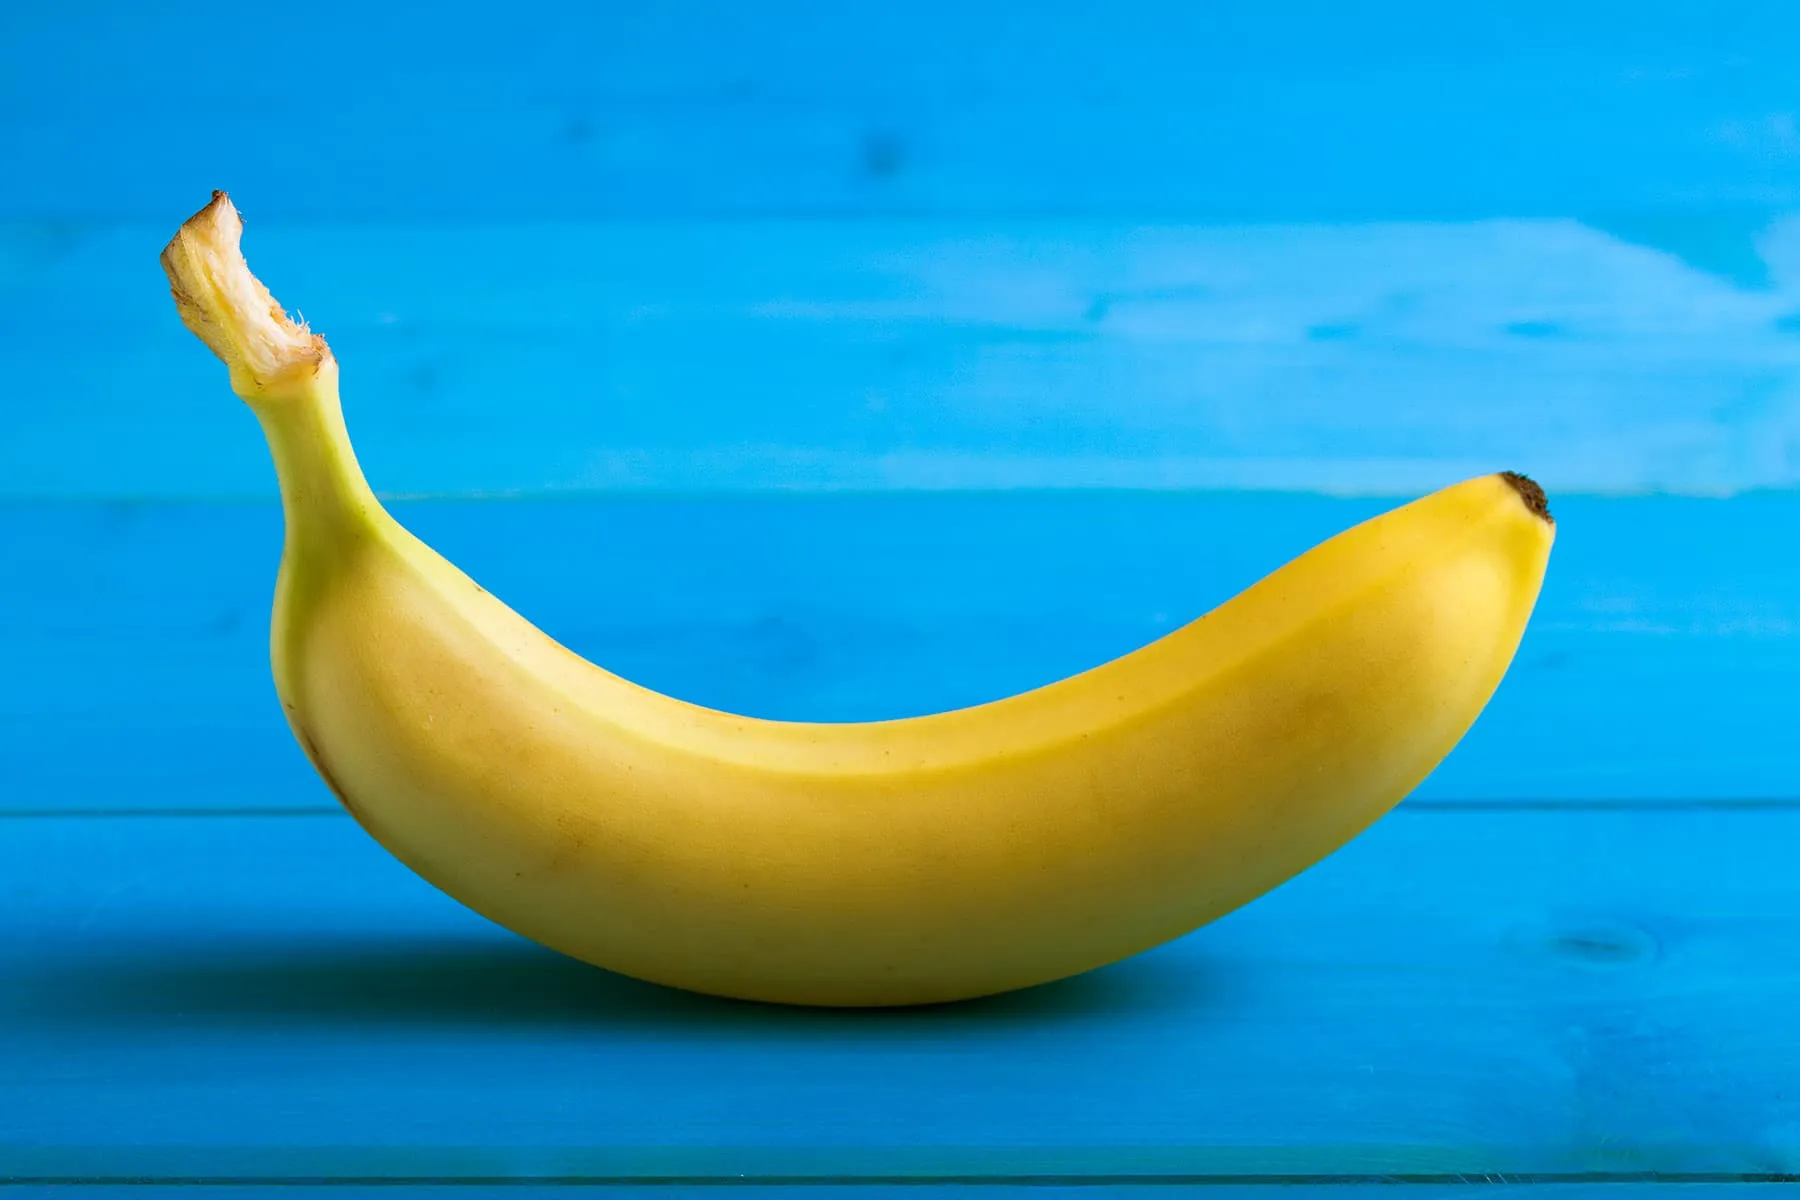 Картинка банан. Банан. Бананы на голубом фоне. Натуральный банан. Желтый банан.